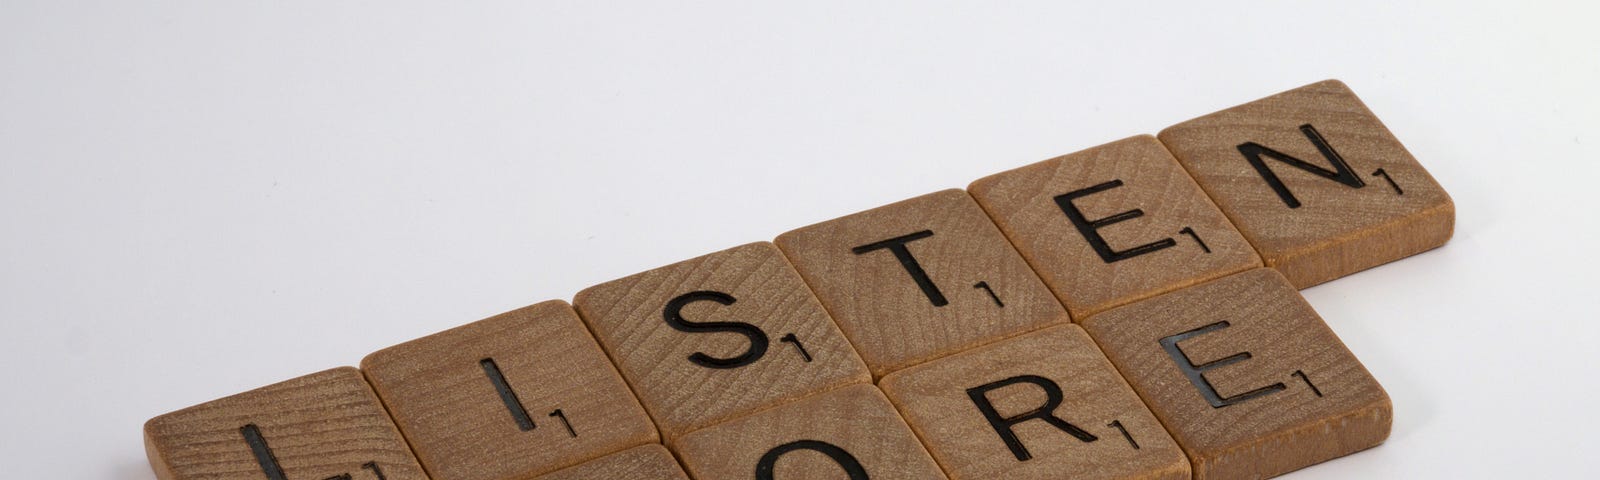 Scrabble tiles arranged to spell “Listen More.”